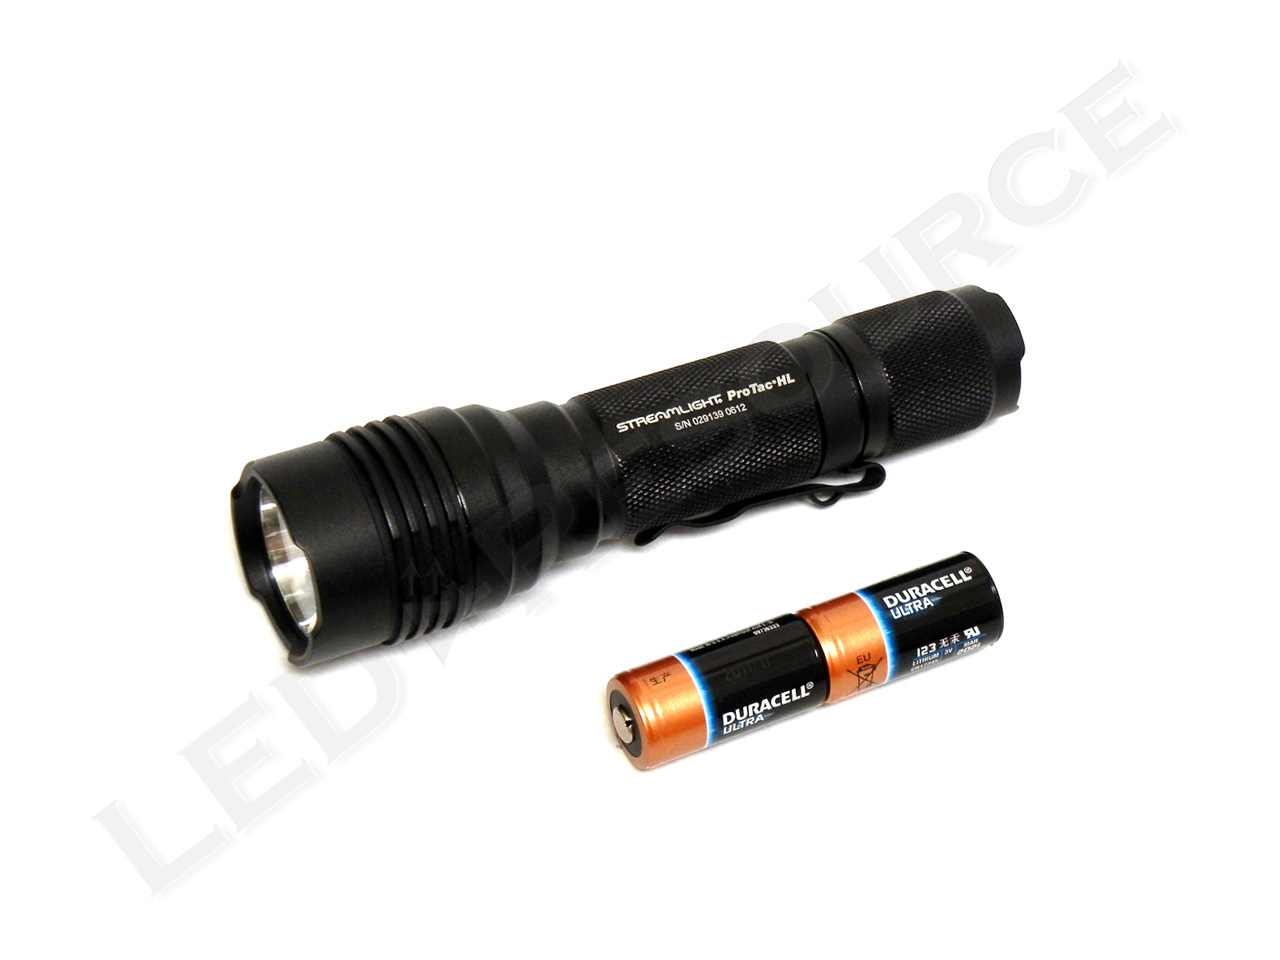 ProTac HL LED Flashlight Review - LED-Resource